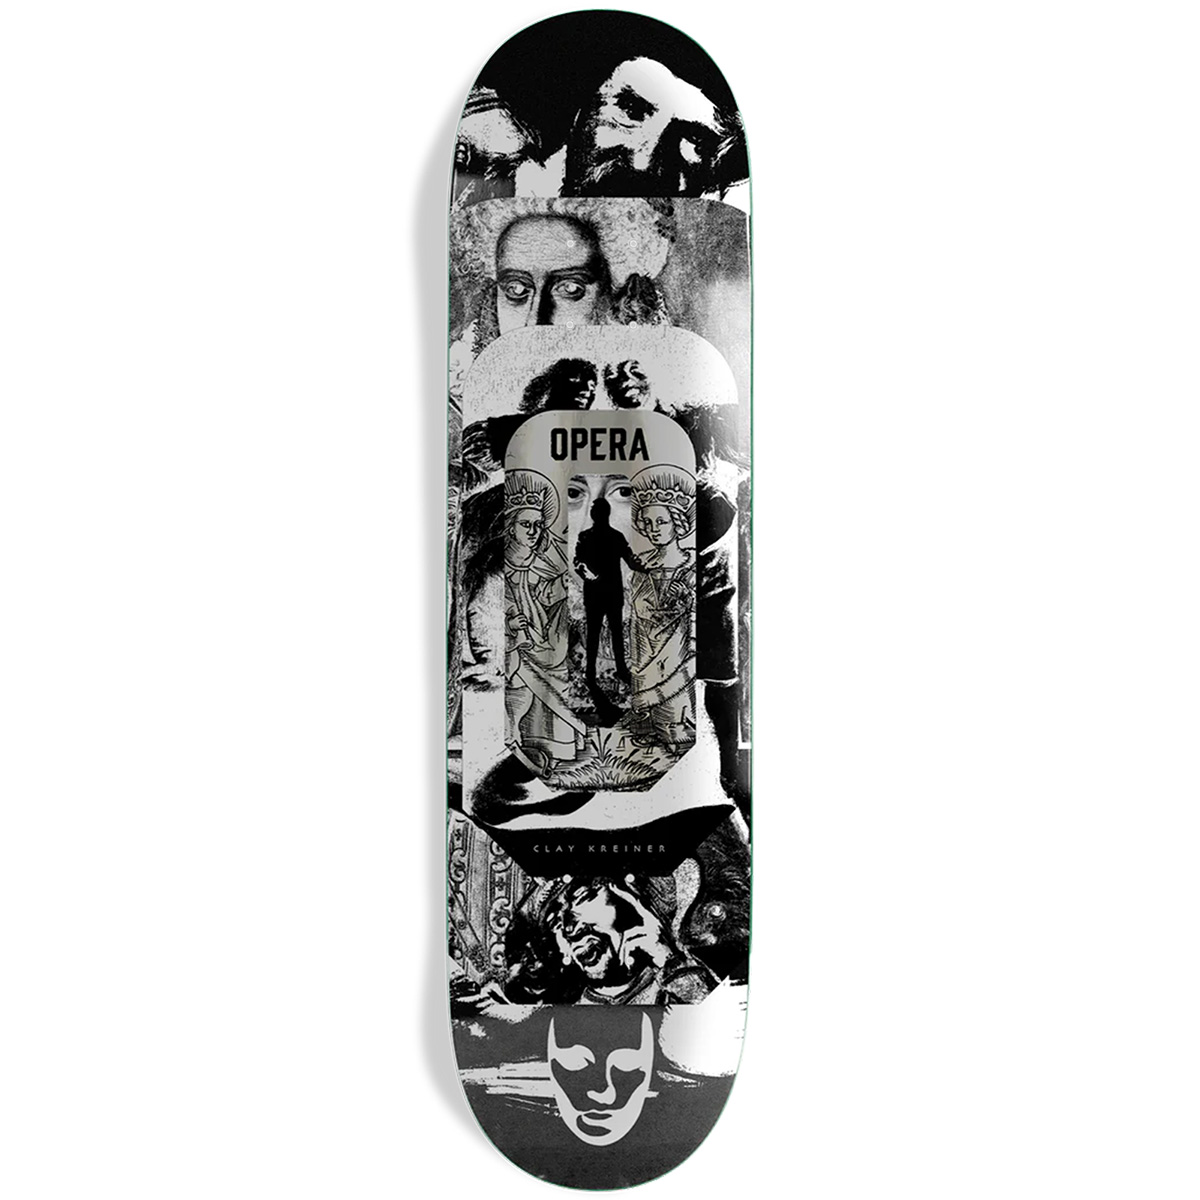 Opera Clay Kreiner Stacked Skateboard Deck Black/White 8.5